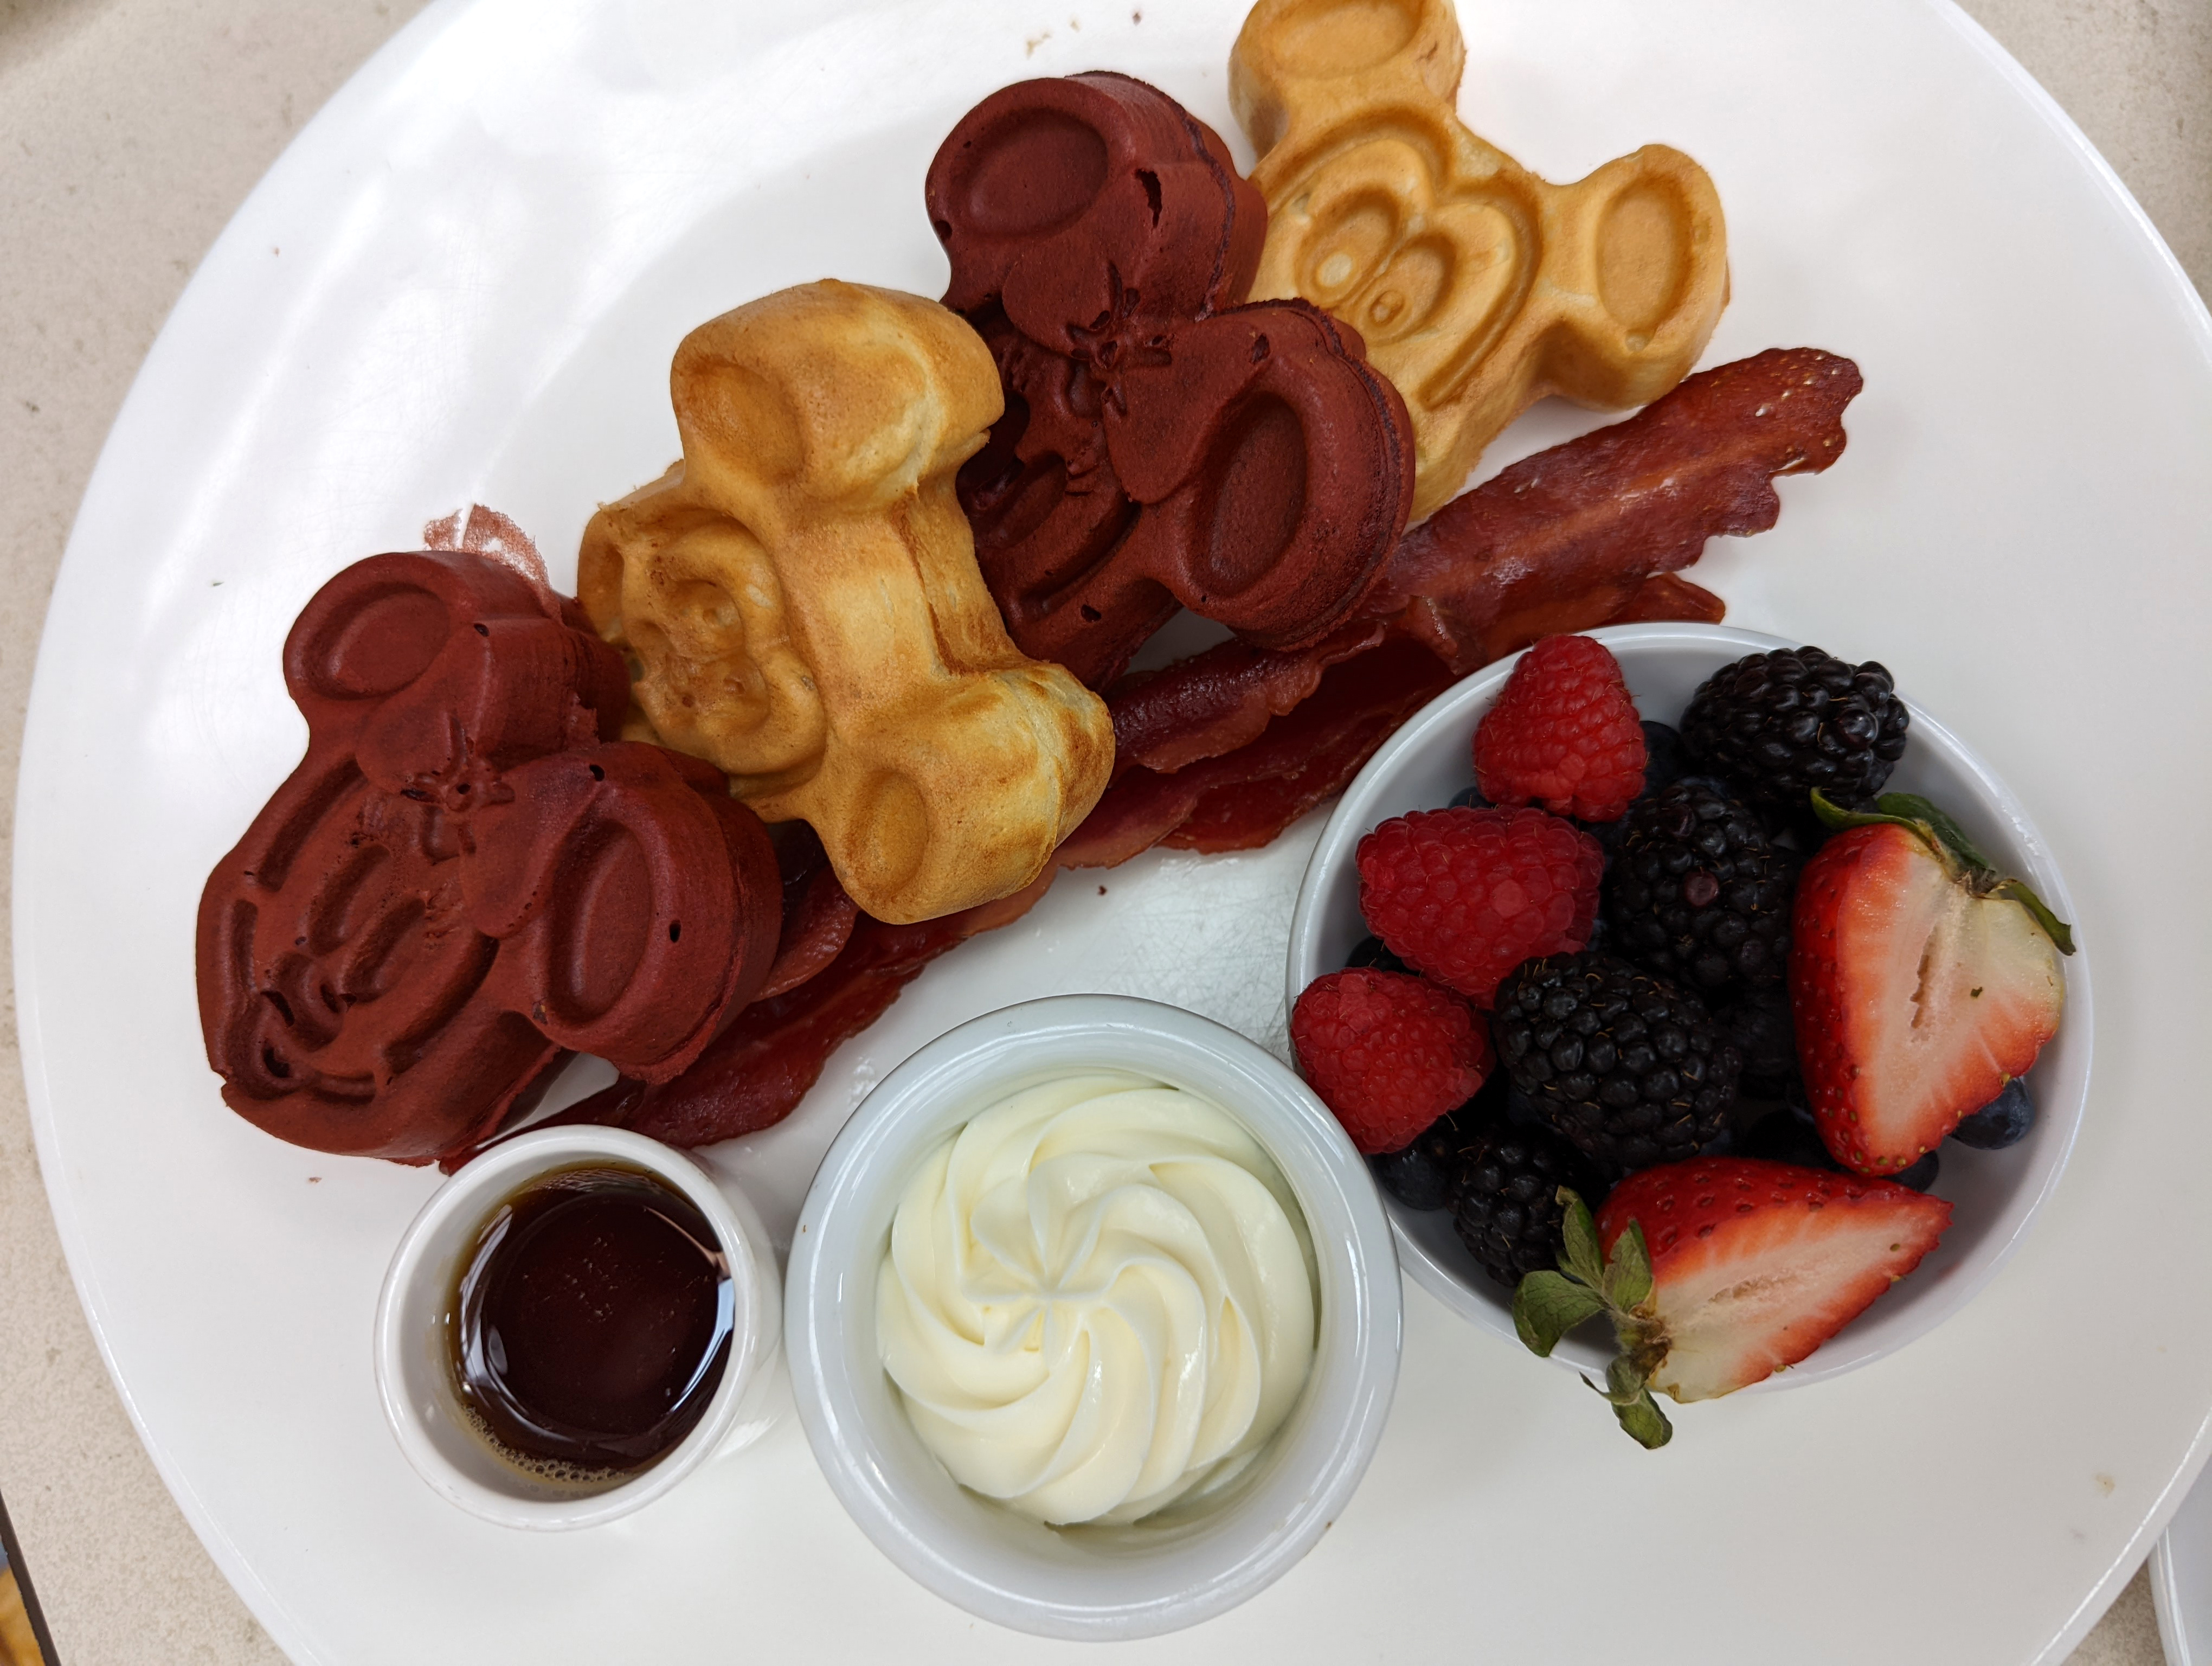 Mickey Shaped Foods at Disney World - Mickey Waffles